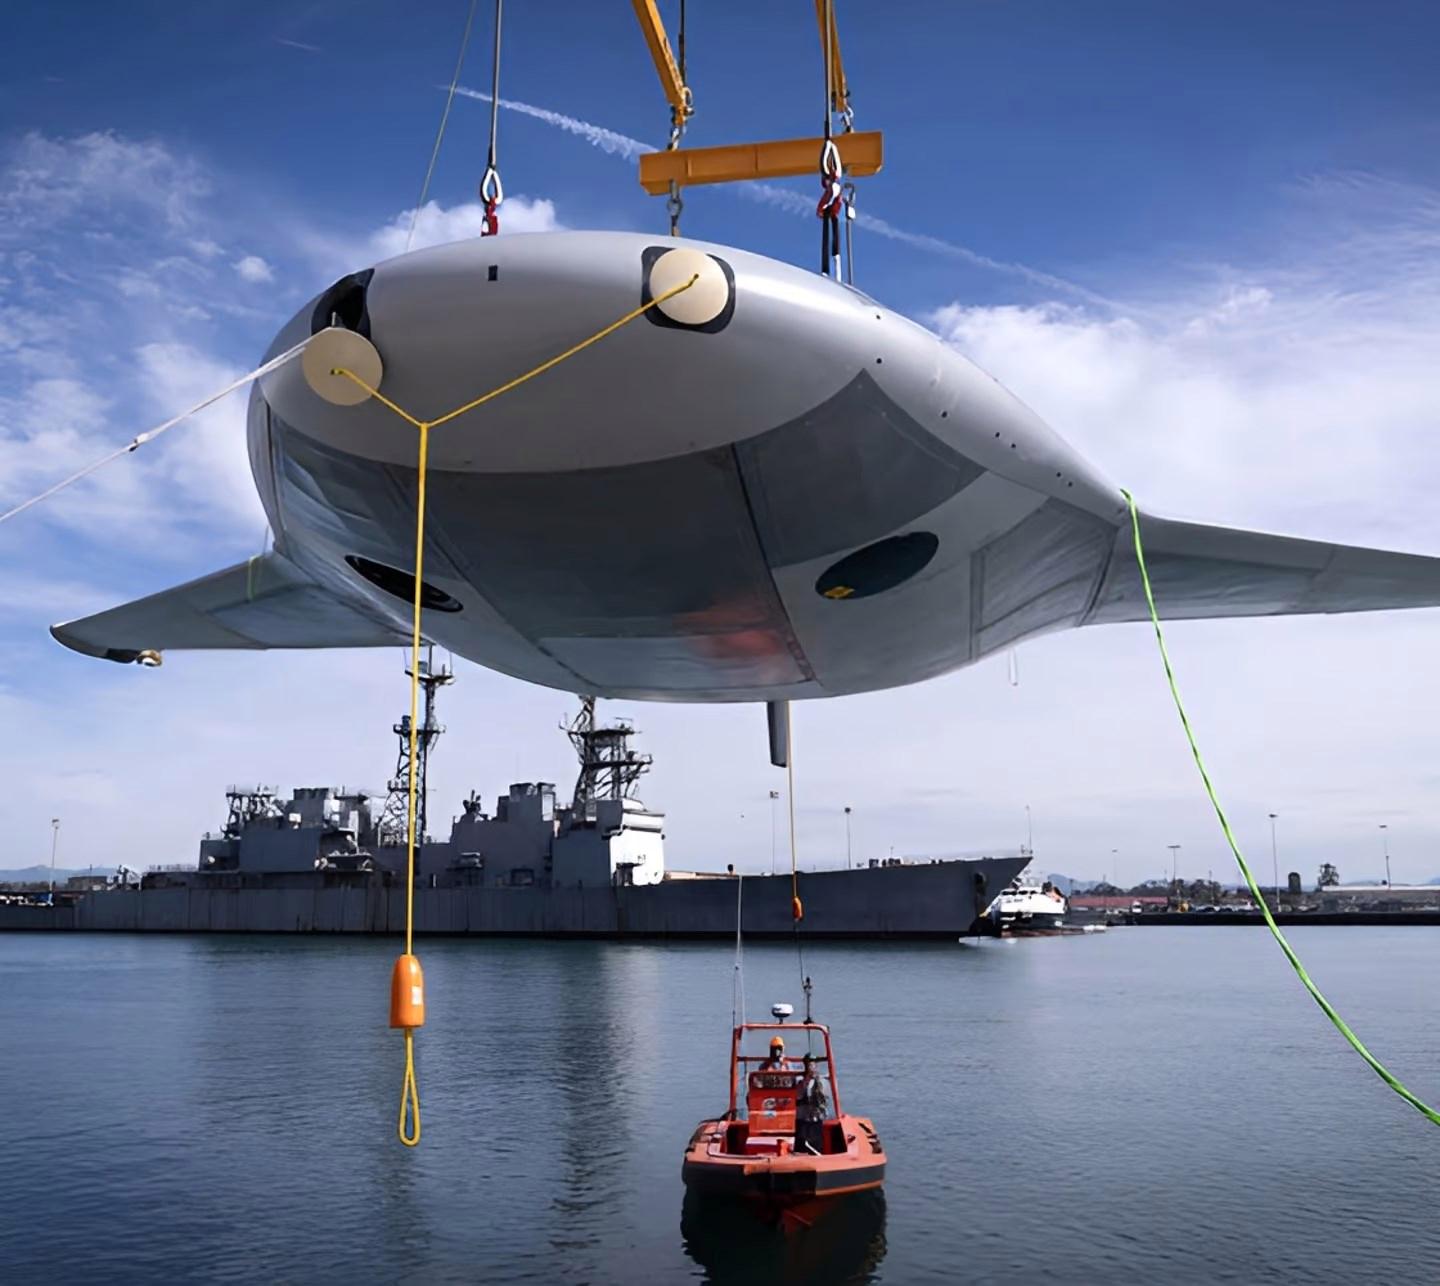 Northrop Grumman, planör gibi su altında süzülen denizaltı geliştiriyor